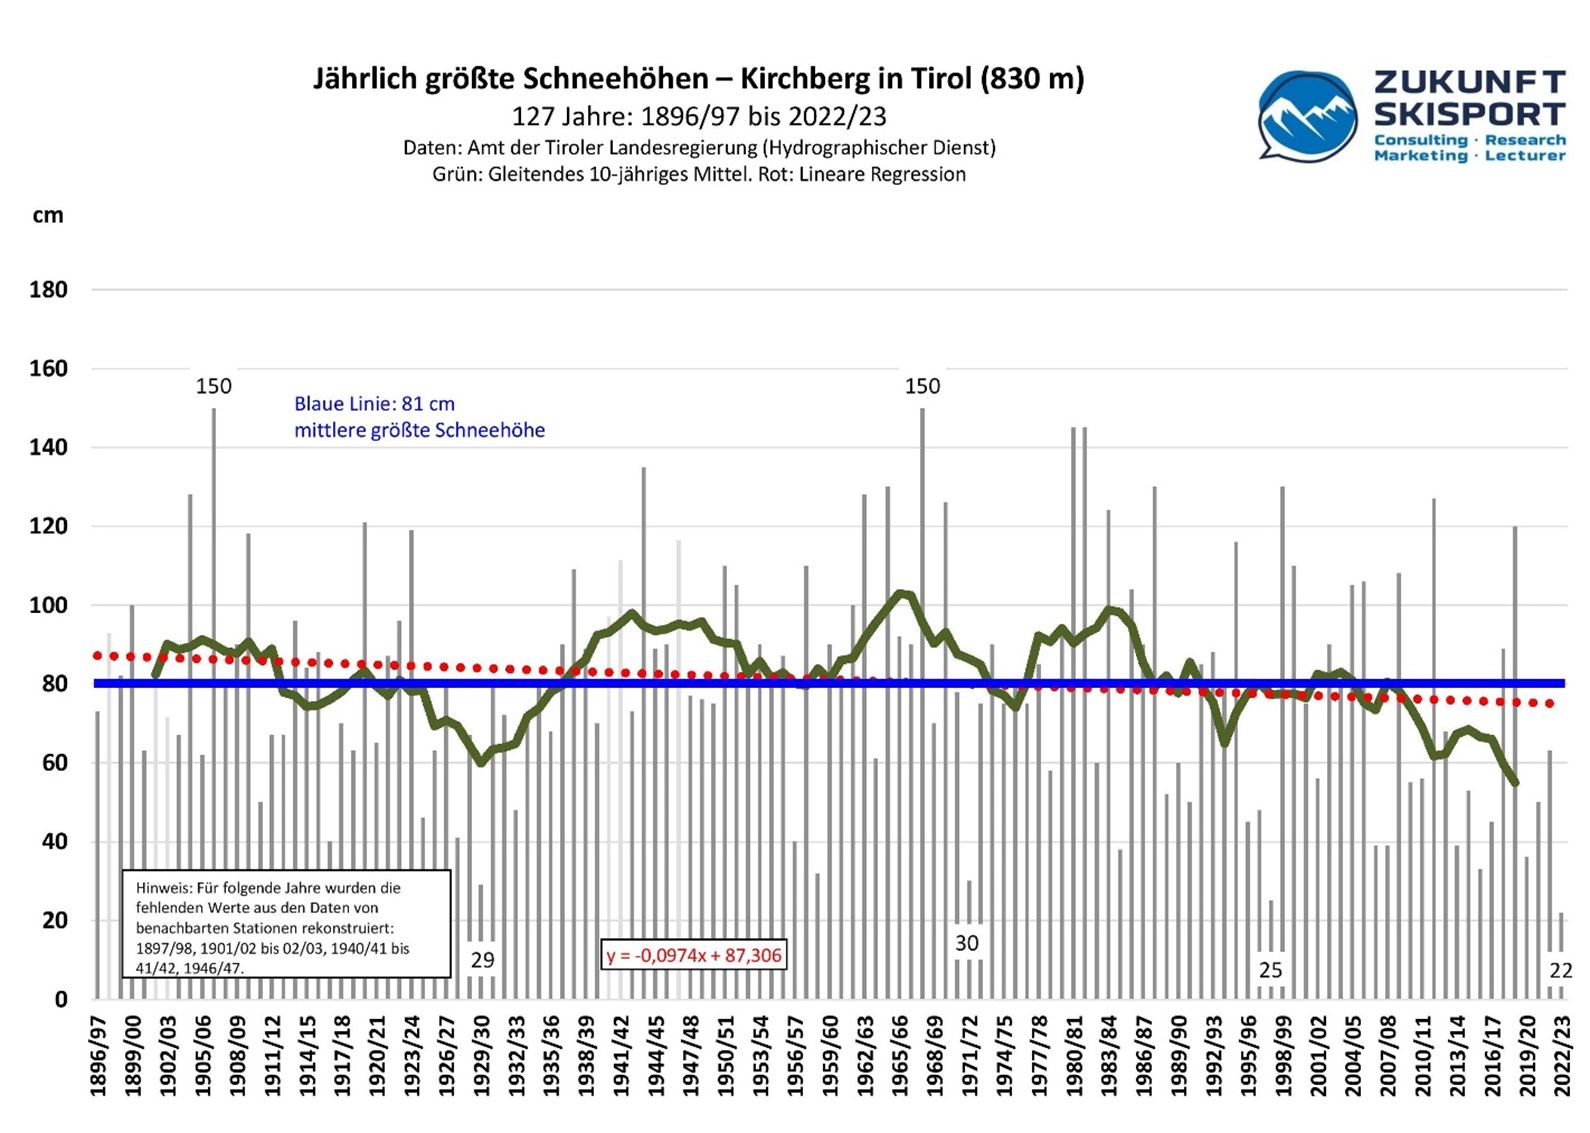 Abb. 1: Die jährlich größten Schneehöhen in Kirchberg in Tirol von 1896/97 bis 2022/23. Daten: Amt der Tiroler Landesregierung (Hydrographischer Dienst). Stand: 16.03.2023